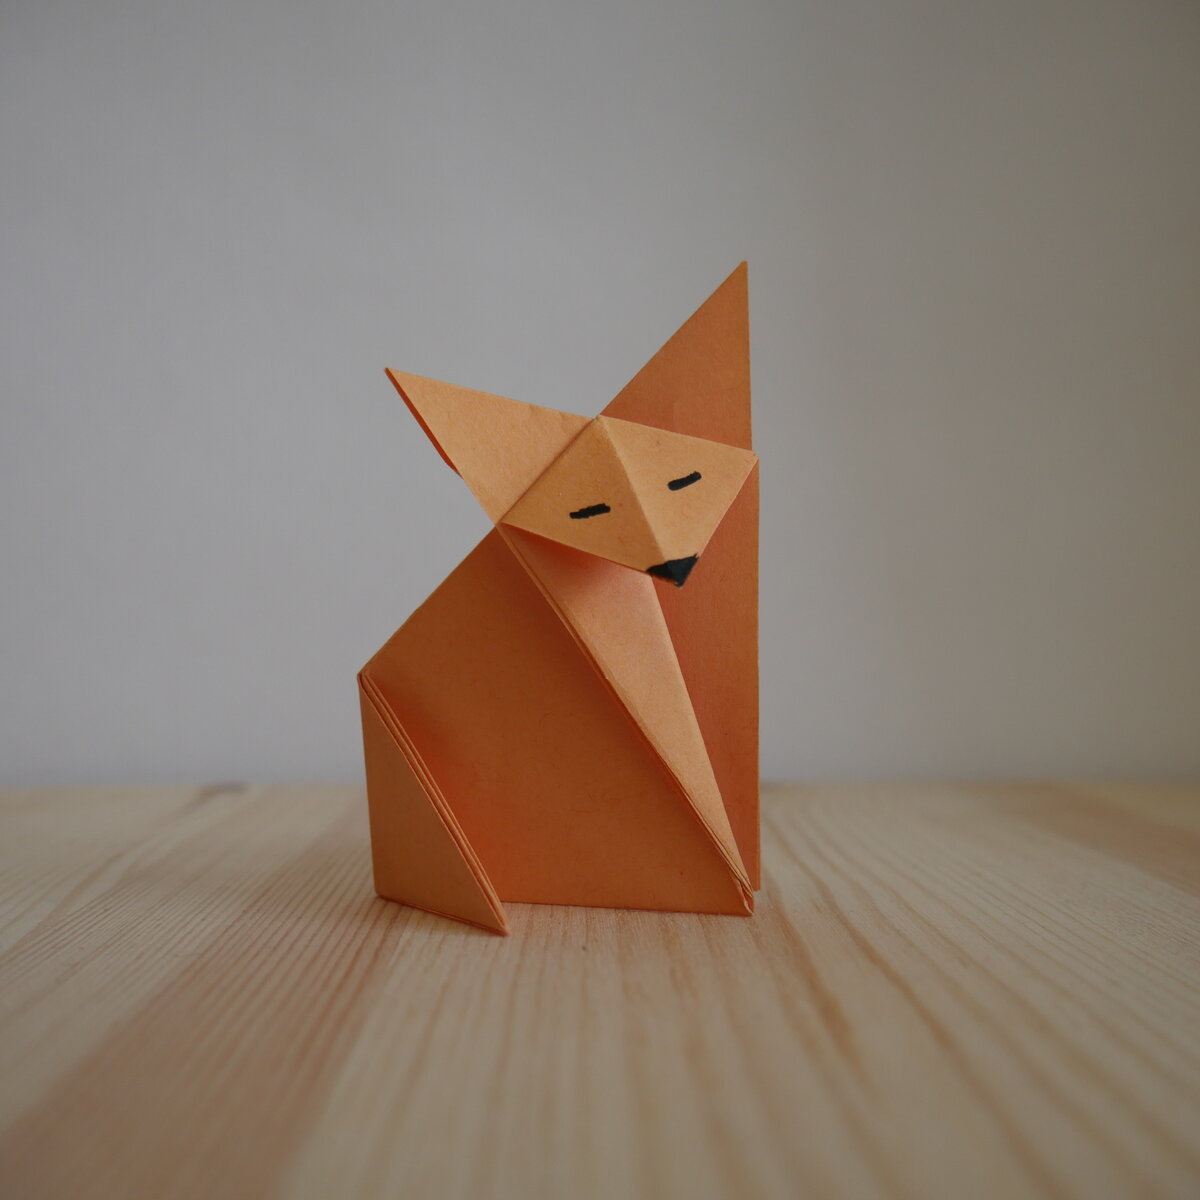 Оригами. Как сделать зайца из бумаги (видео урок)